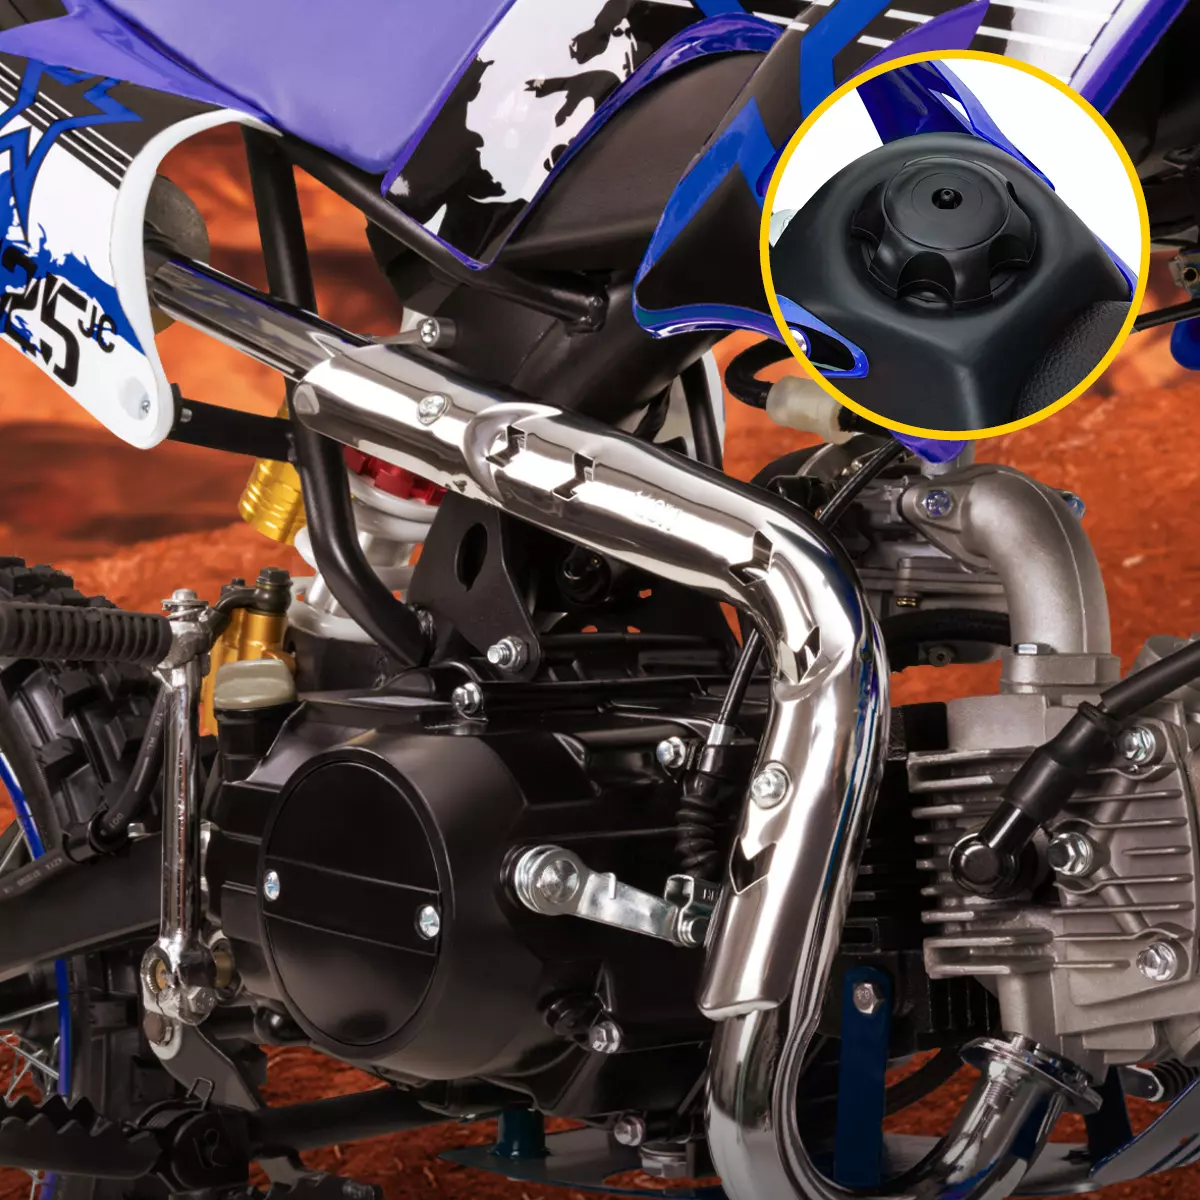 Vergrößerter Benzinmotor des Kinder-Motocross-Bikes von Actionbikes